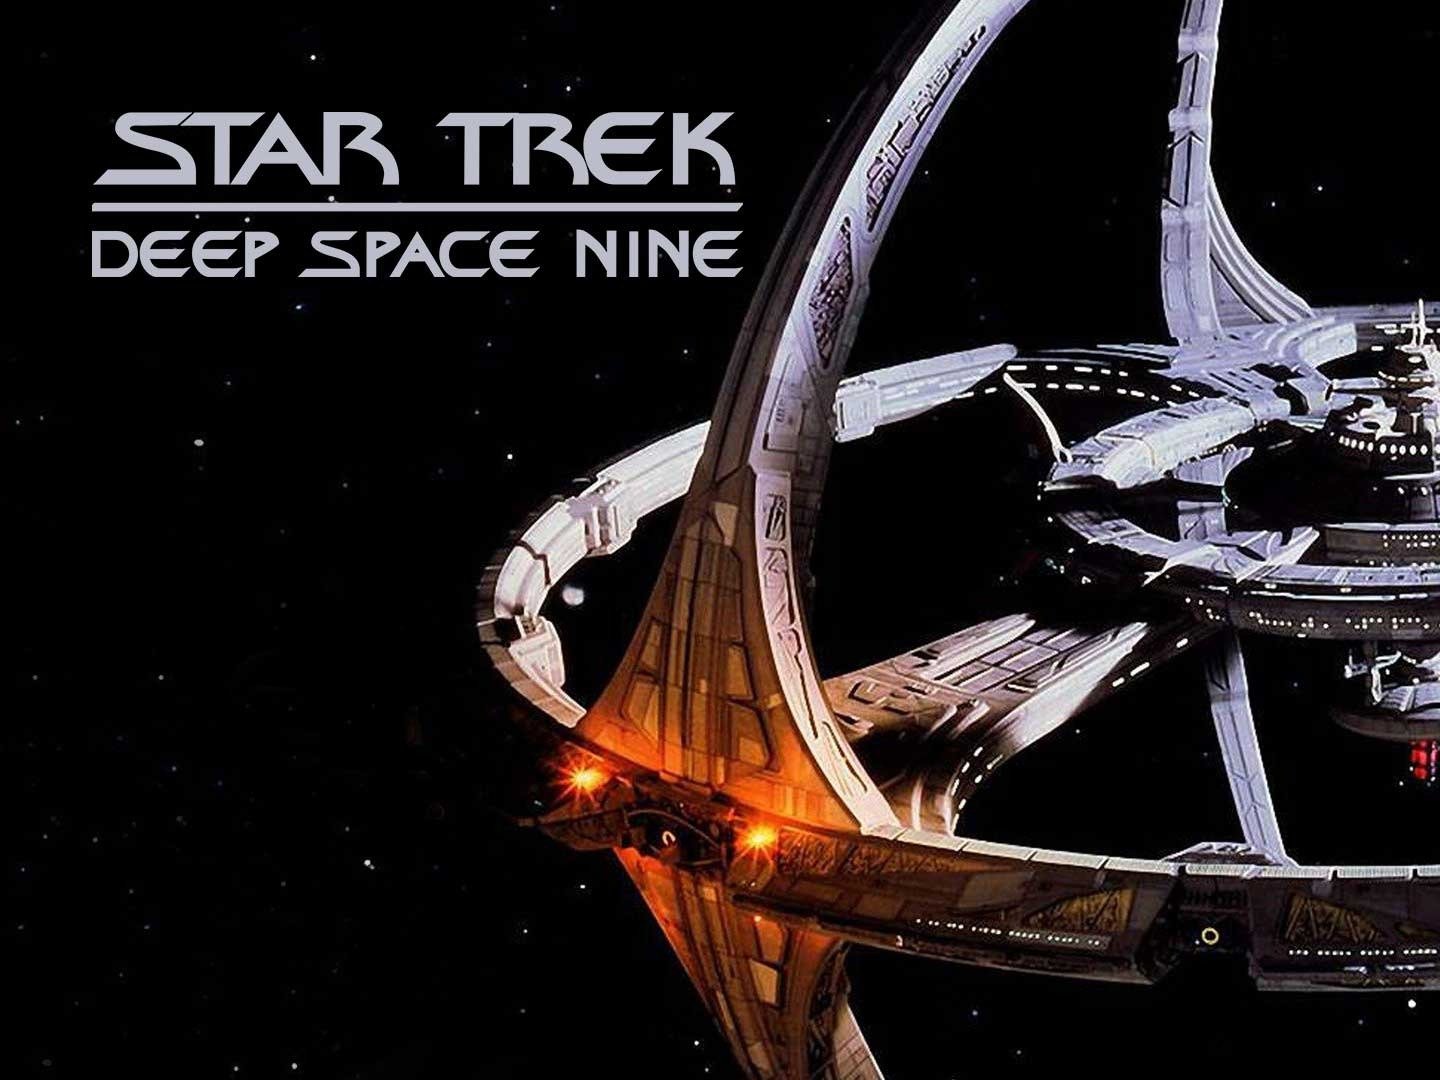 Star Trek: Deep Space Nine - một chủ đề không thể bỏ qua cho những fan của phim khoa học viễn tưởng. Và bức hình chụp cảnh quay Deep Space Nine chắc chắn sẽ là một lựa chọn tuyệt vời để làm hình nền cho máy tính của bạn! Hãy bấm vào để tìm hiểu thêm về bức ảnh này và cùng phiêu lưu vào một thế giới tương lai đầy hứa hẹn! 